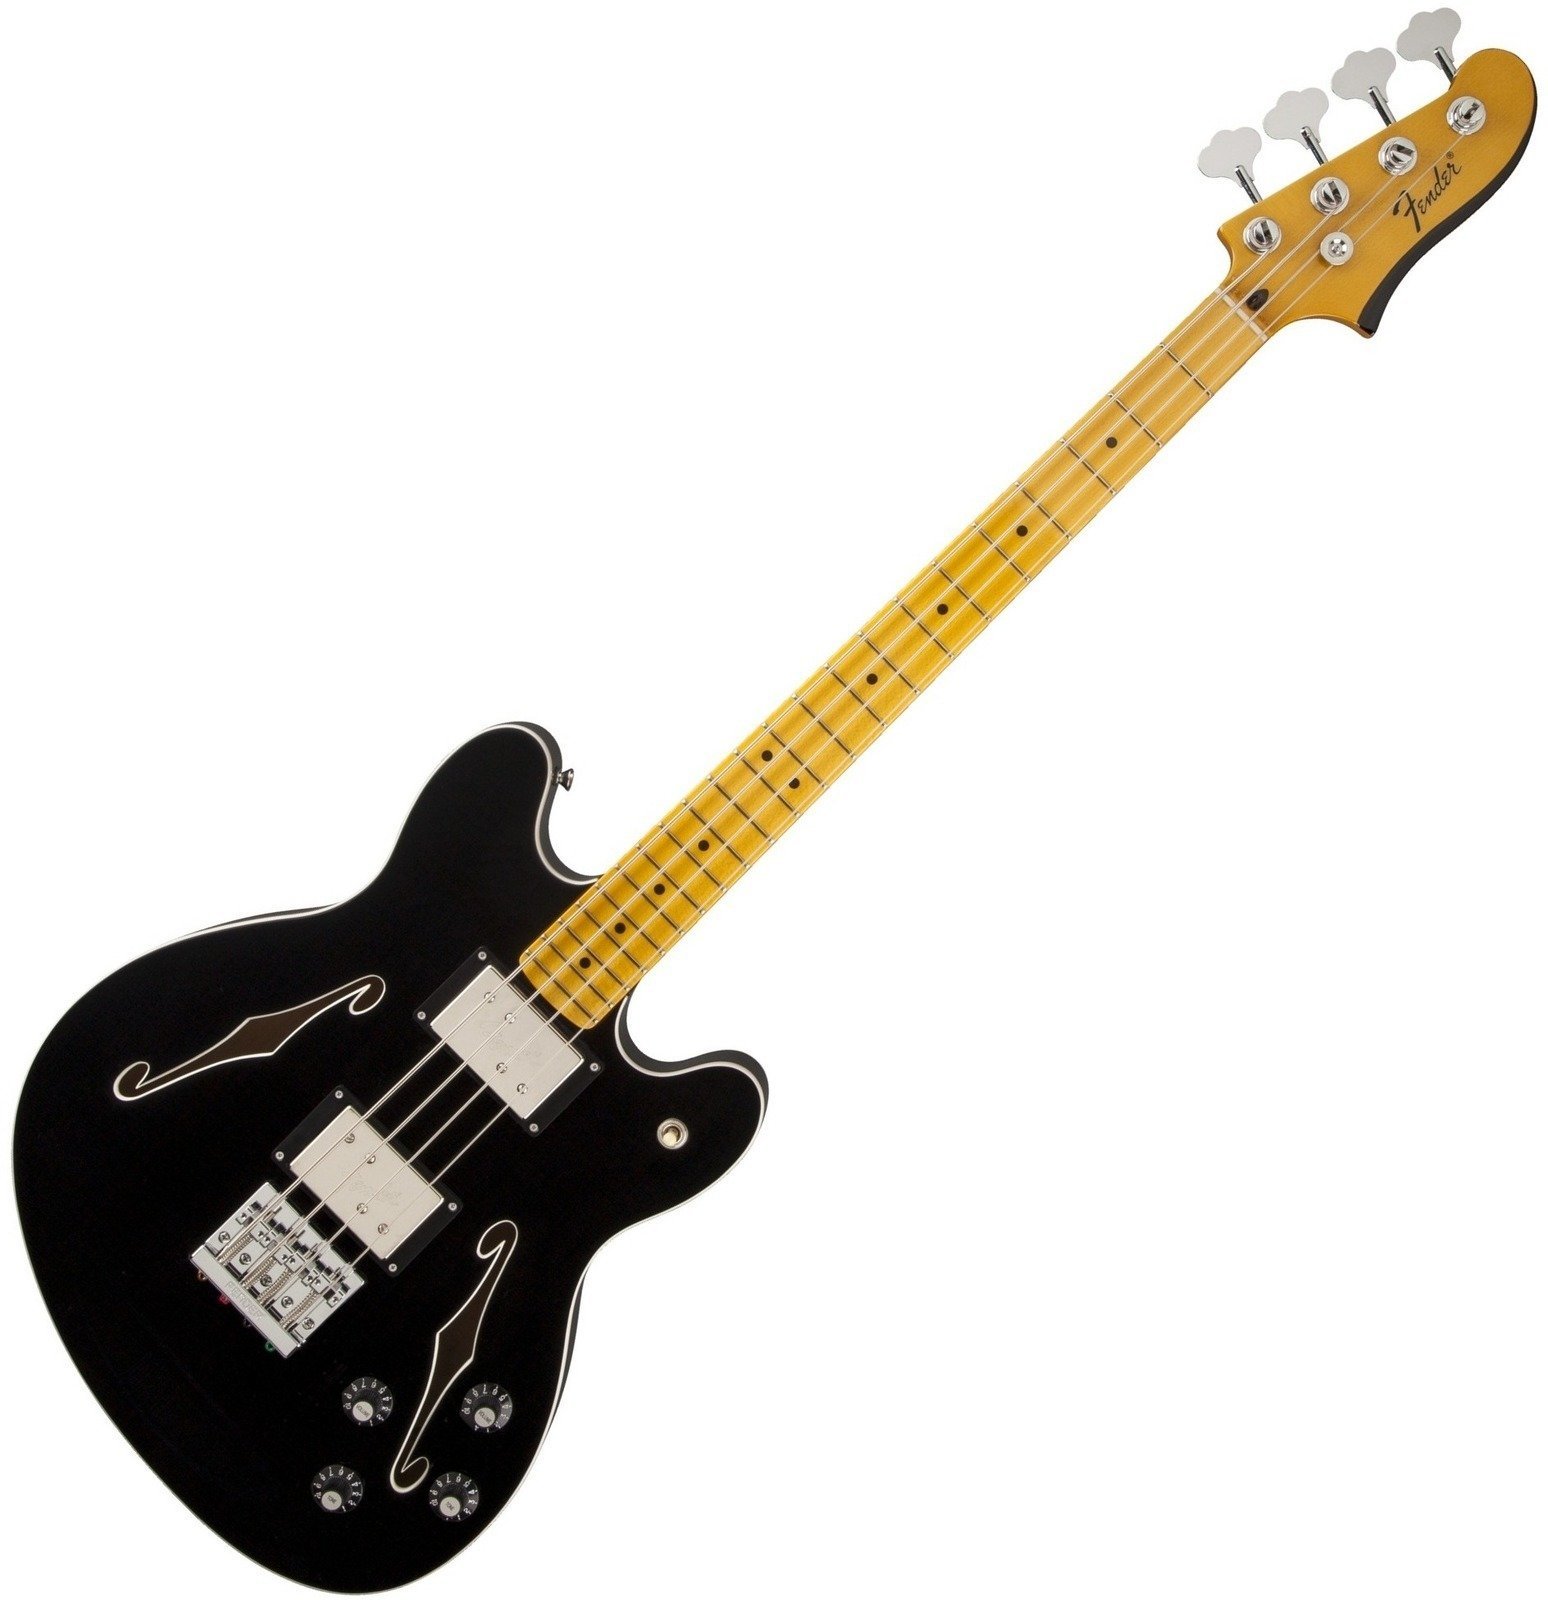 Semiakustická baskytara Fender Starcaster Bass Black